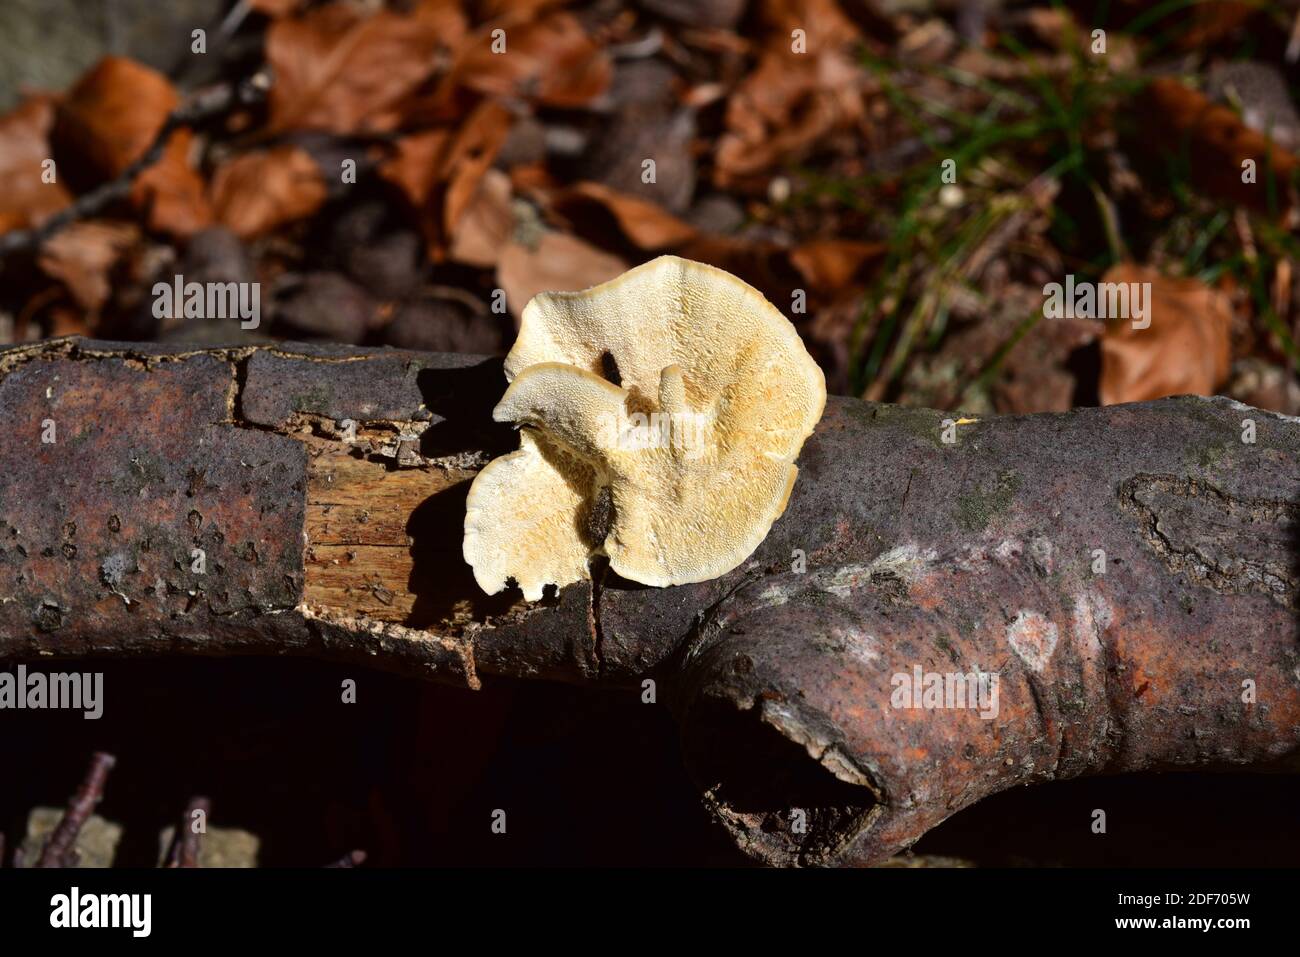 Meruliopsis corium, Byssomerulius corium o Telephora corium è un fungo di crosta che cresce in rami di alberi decidui (faggio in questa foto). Questo Foto Stock